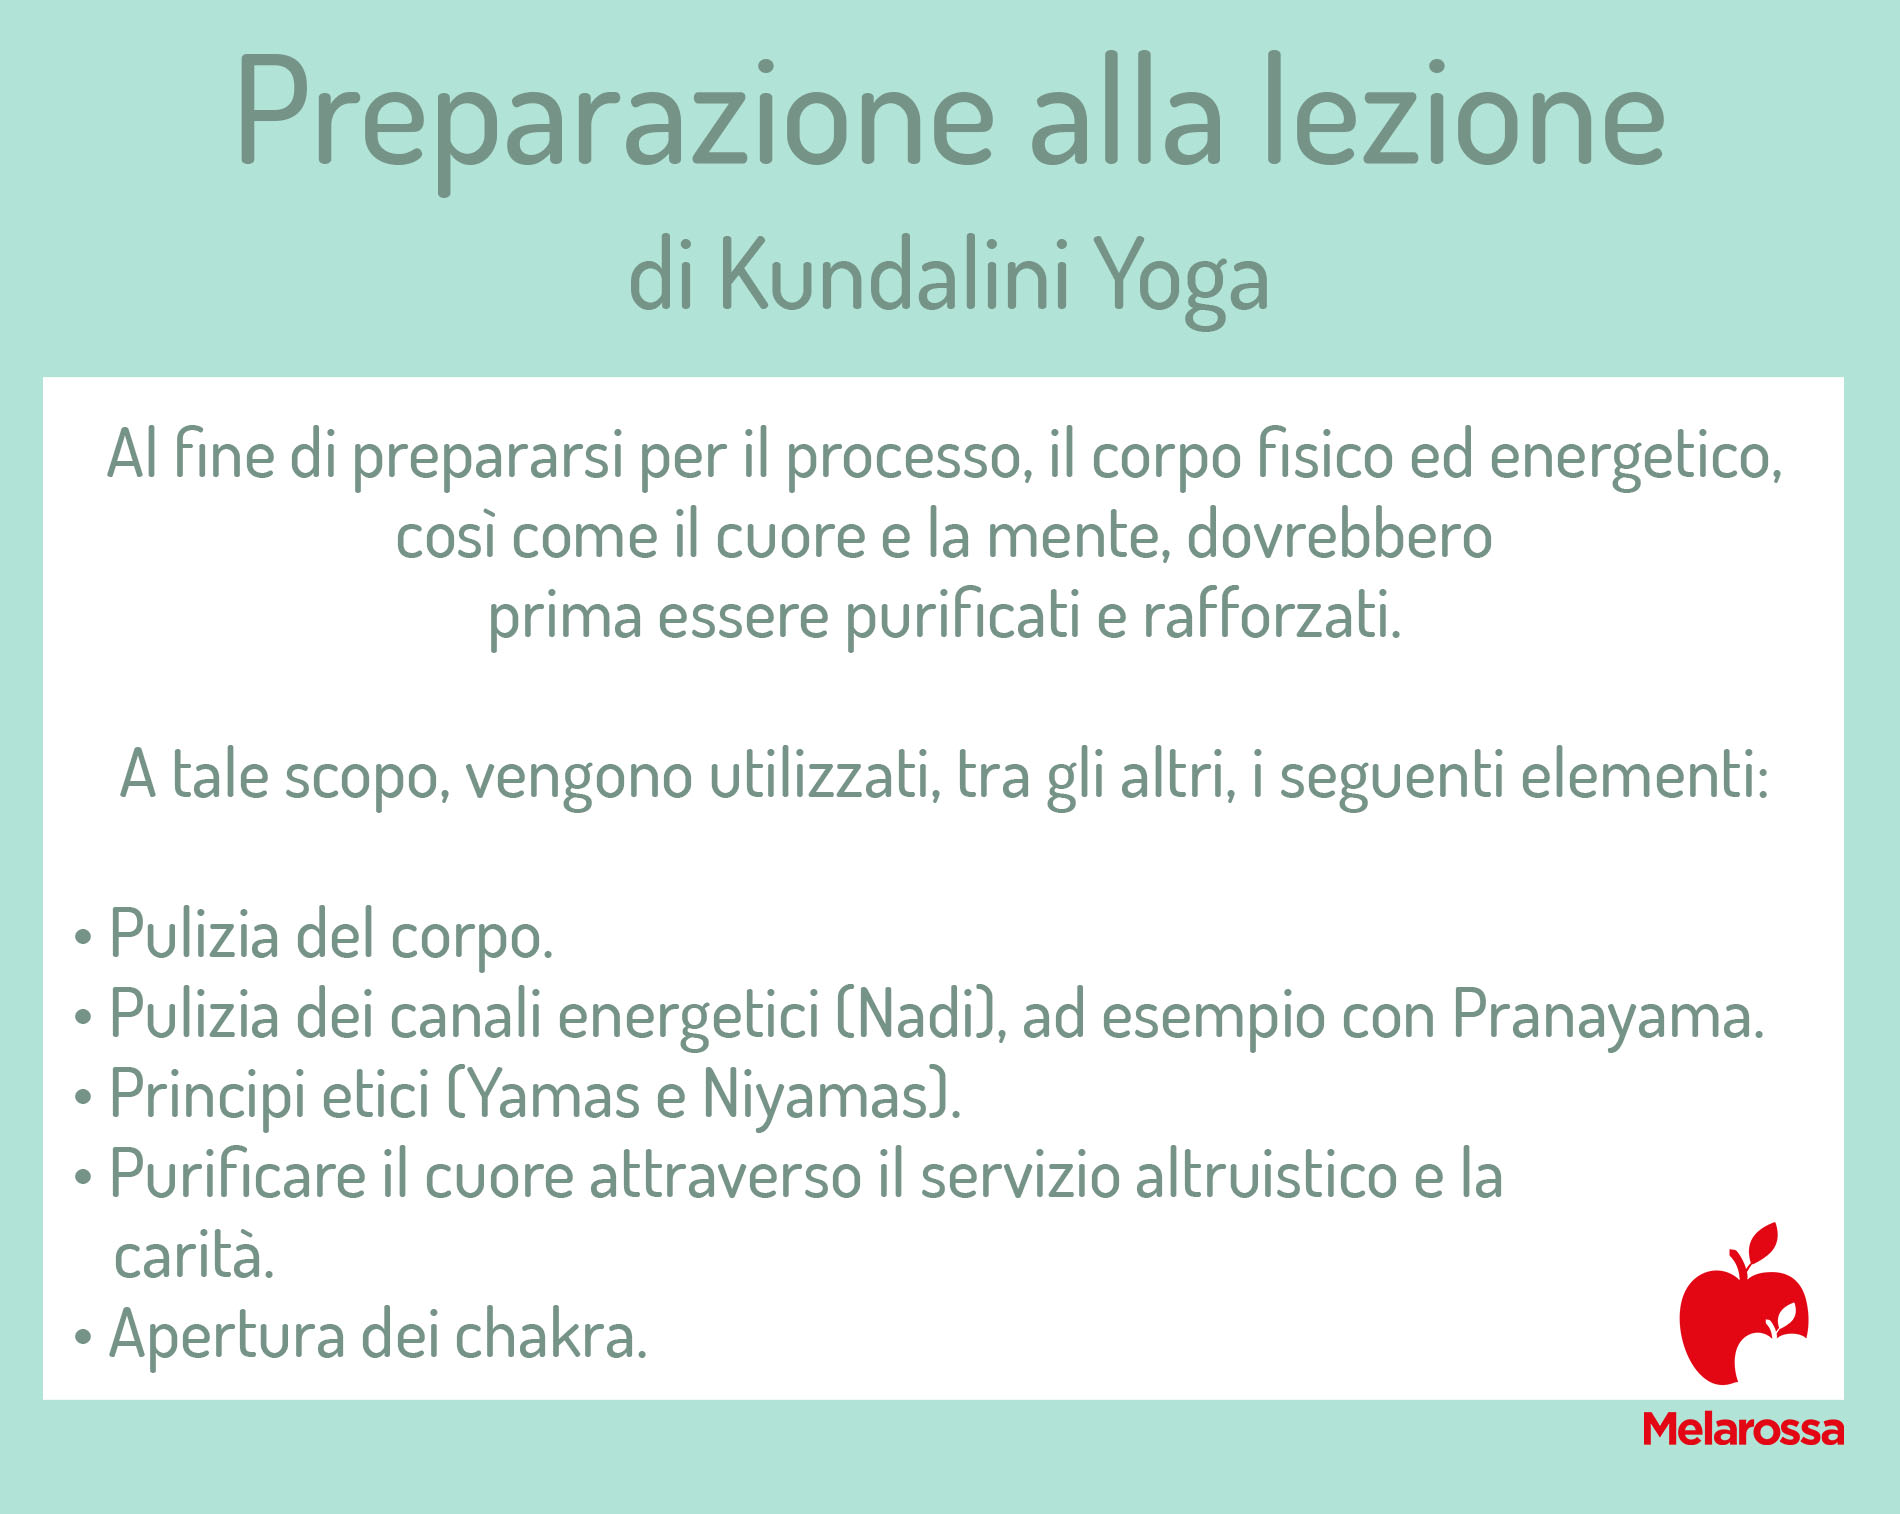 Kundalini Yoga: preparazione alla lezione 